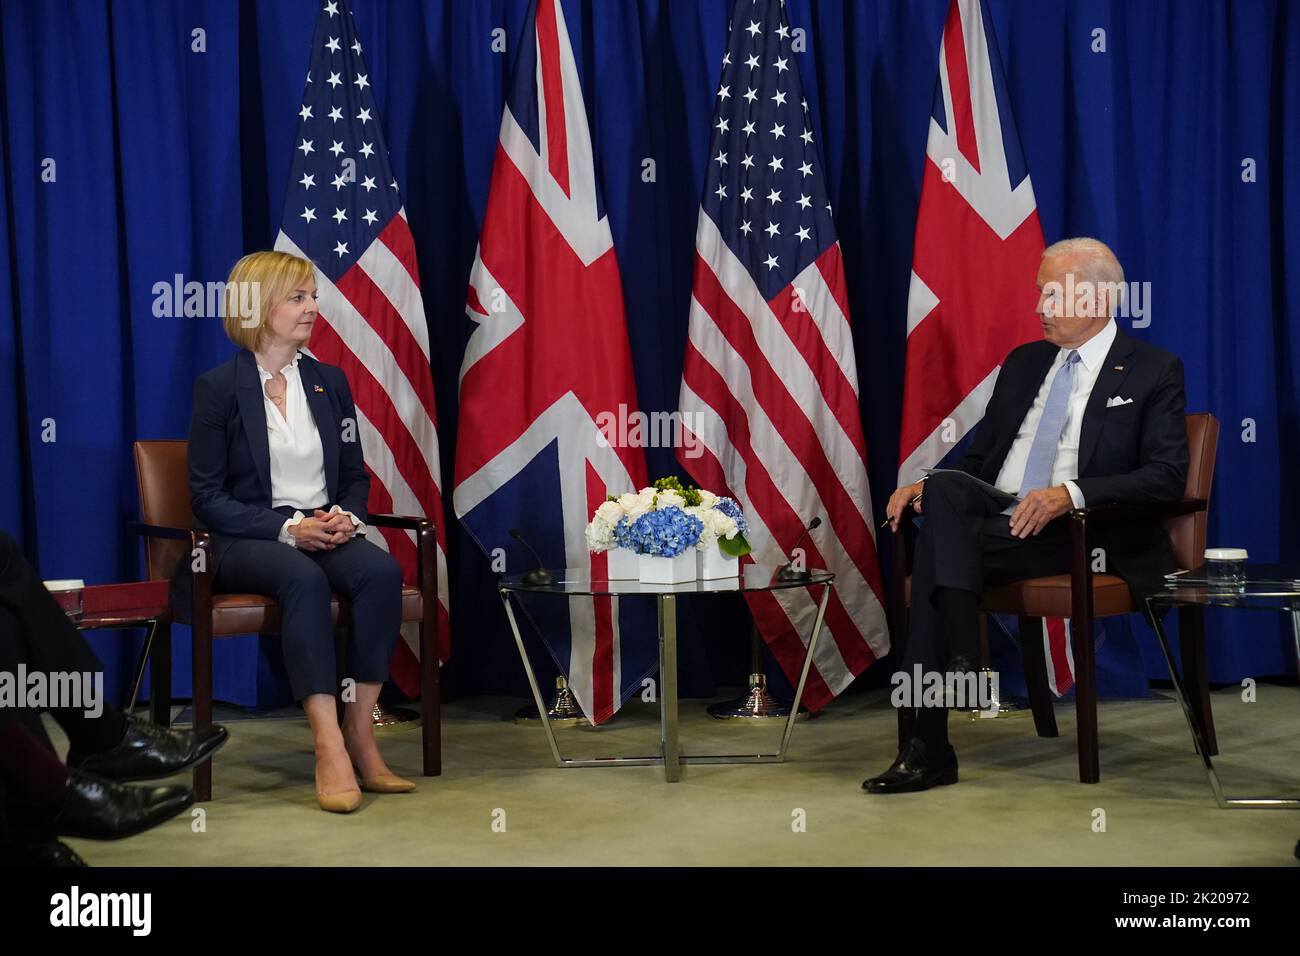 La Primera Ministra Liz Truss mantiene un acuerdo bilateral con el Presidente de Estados Unidos Joe Biden en el edificio de la ONU en Nueva York, durante su visita a Estados Unidos para asistir a la Asamblea General de la ONU de 77th. Fecha de la foto: Miércoles 21 de septiembre de 2022. Foto de stock